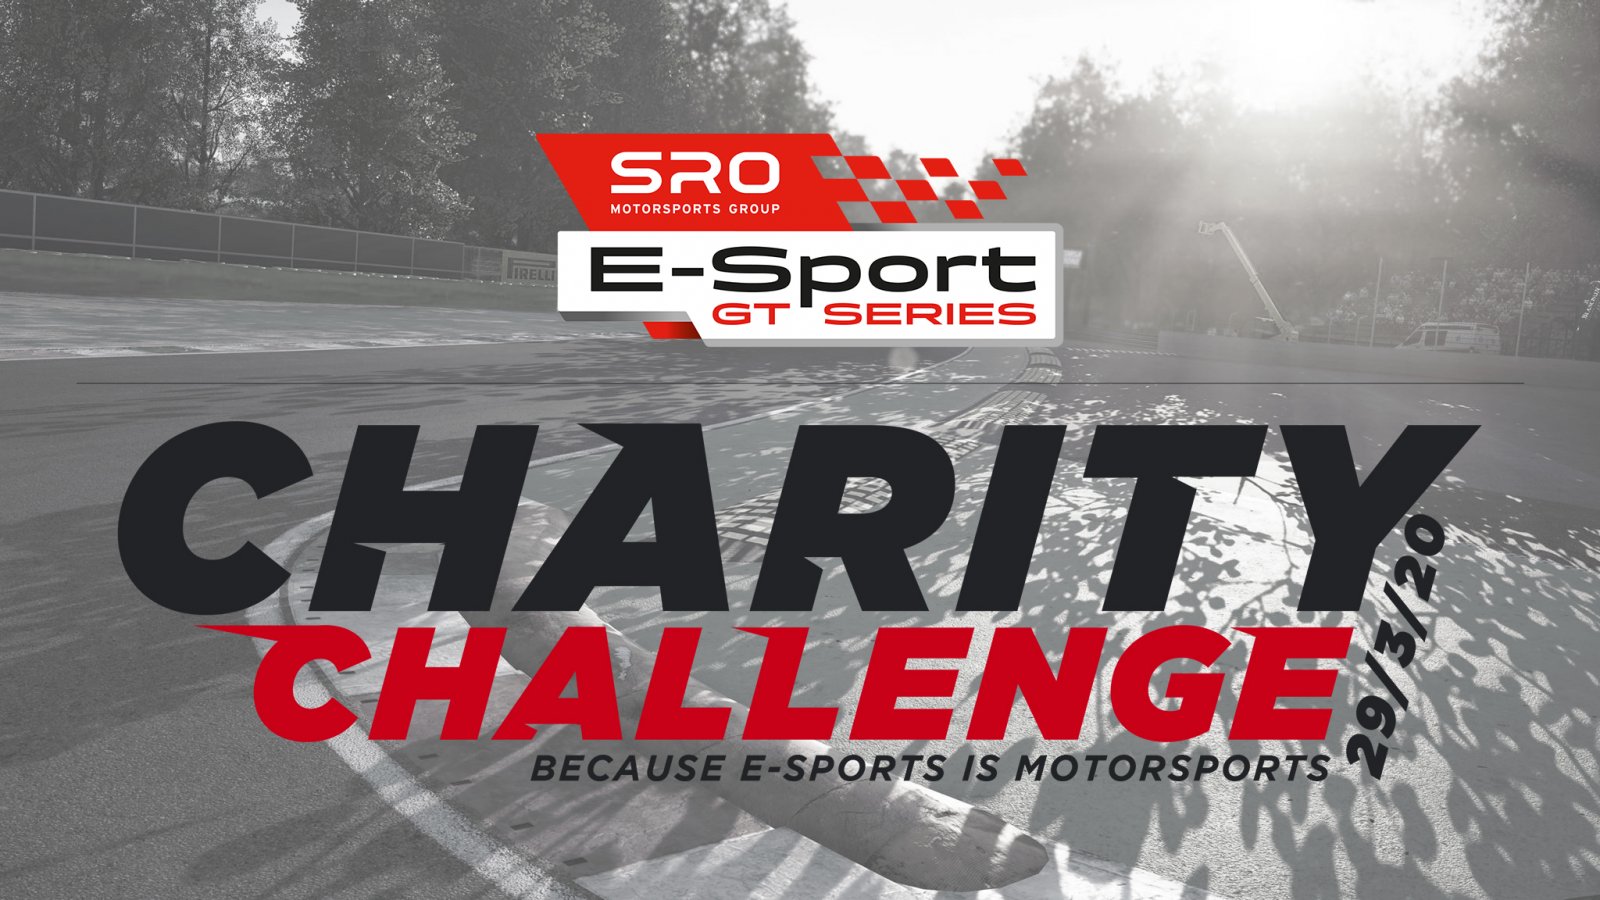  SRO E-Sports GT Series, Kunos Simulazioni and Ak Informatica to stage two-hour Assetto Corsa Competizione race at Monza 